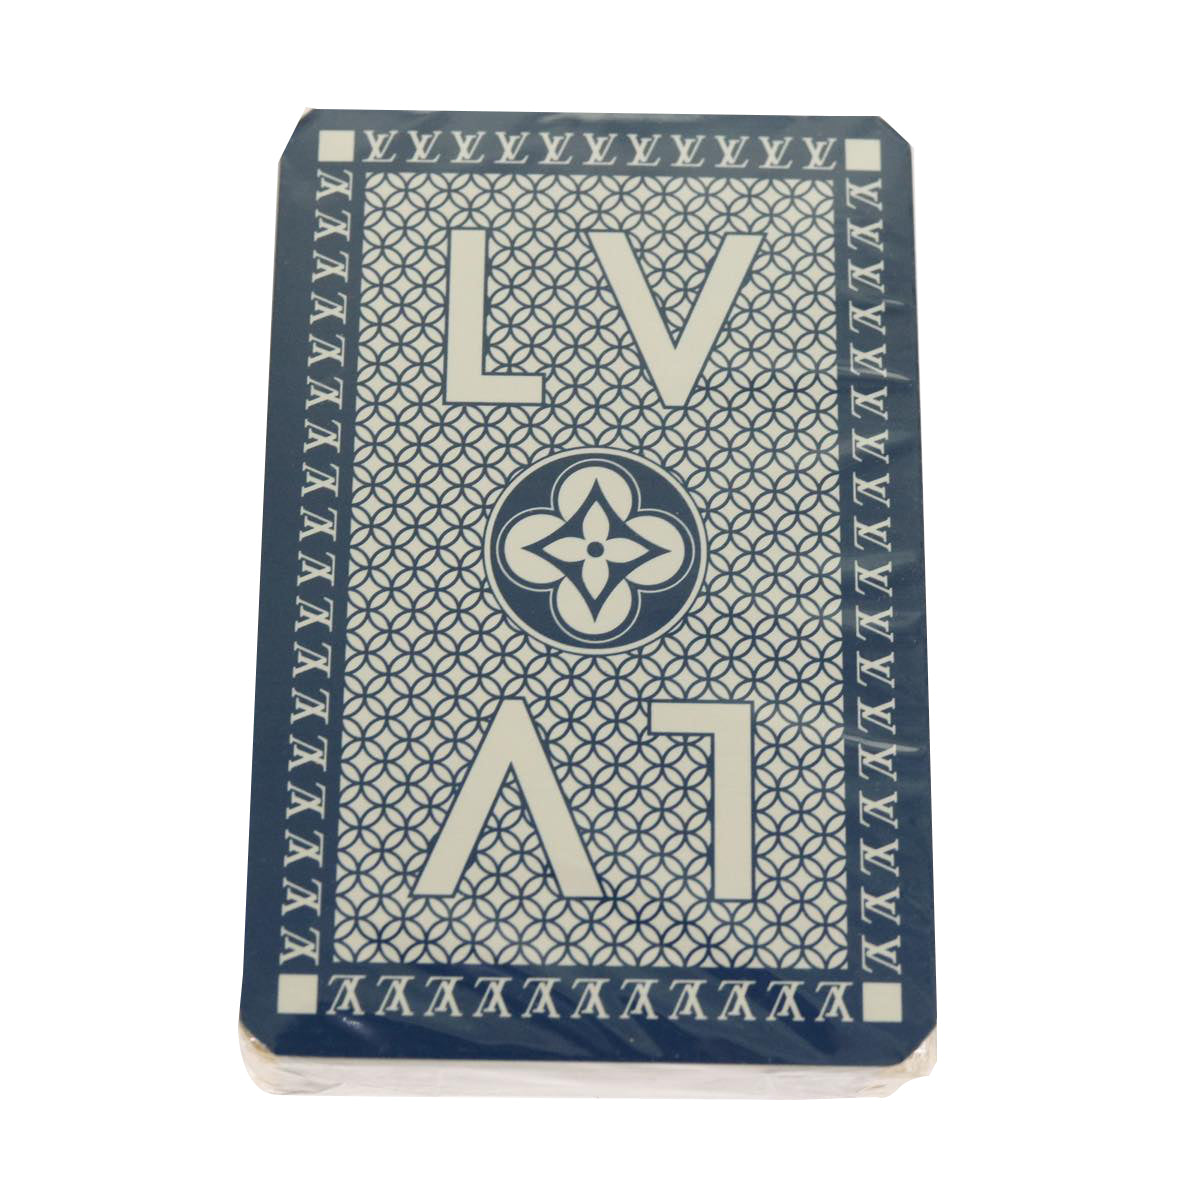 LOUIS VUITTON Cartes Toi Joux Playing Cards 3Set Multicolor M65460 Auth 69480